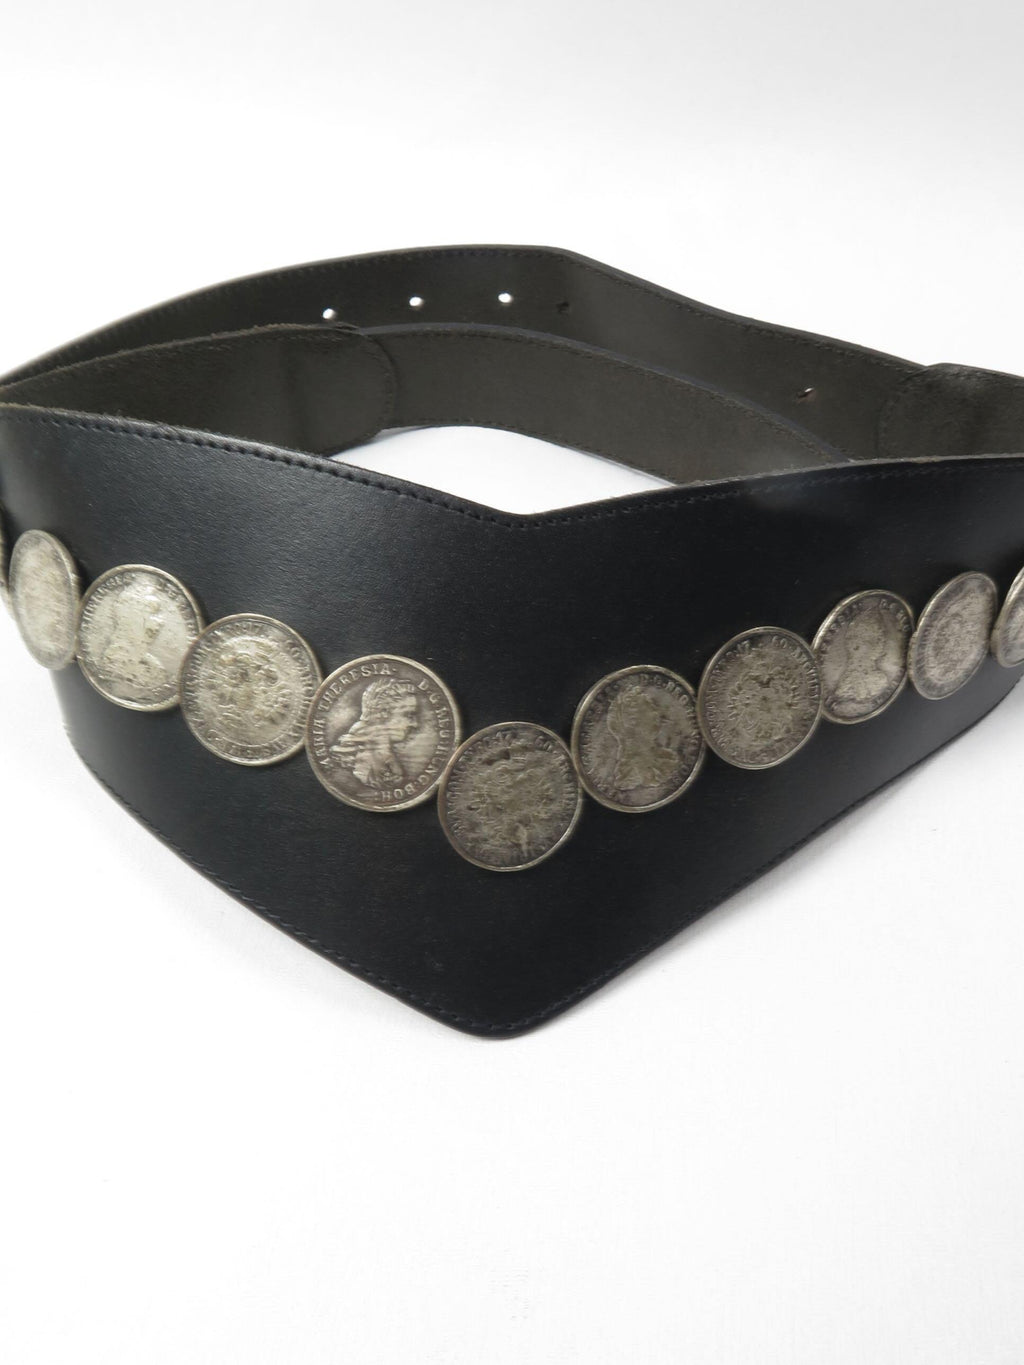 Women's Vintage Black Leather Coin Belt M/L - The Harlequin